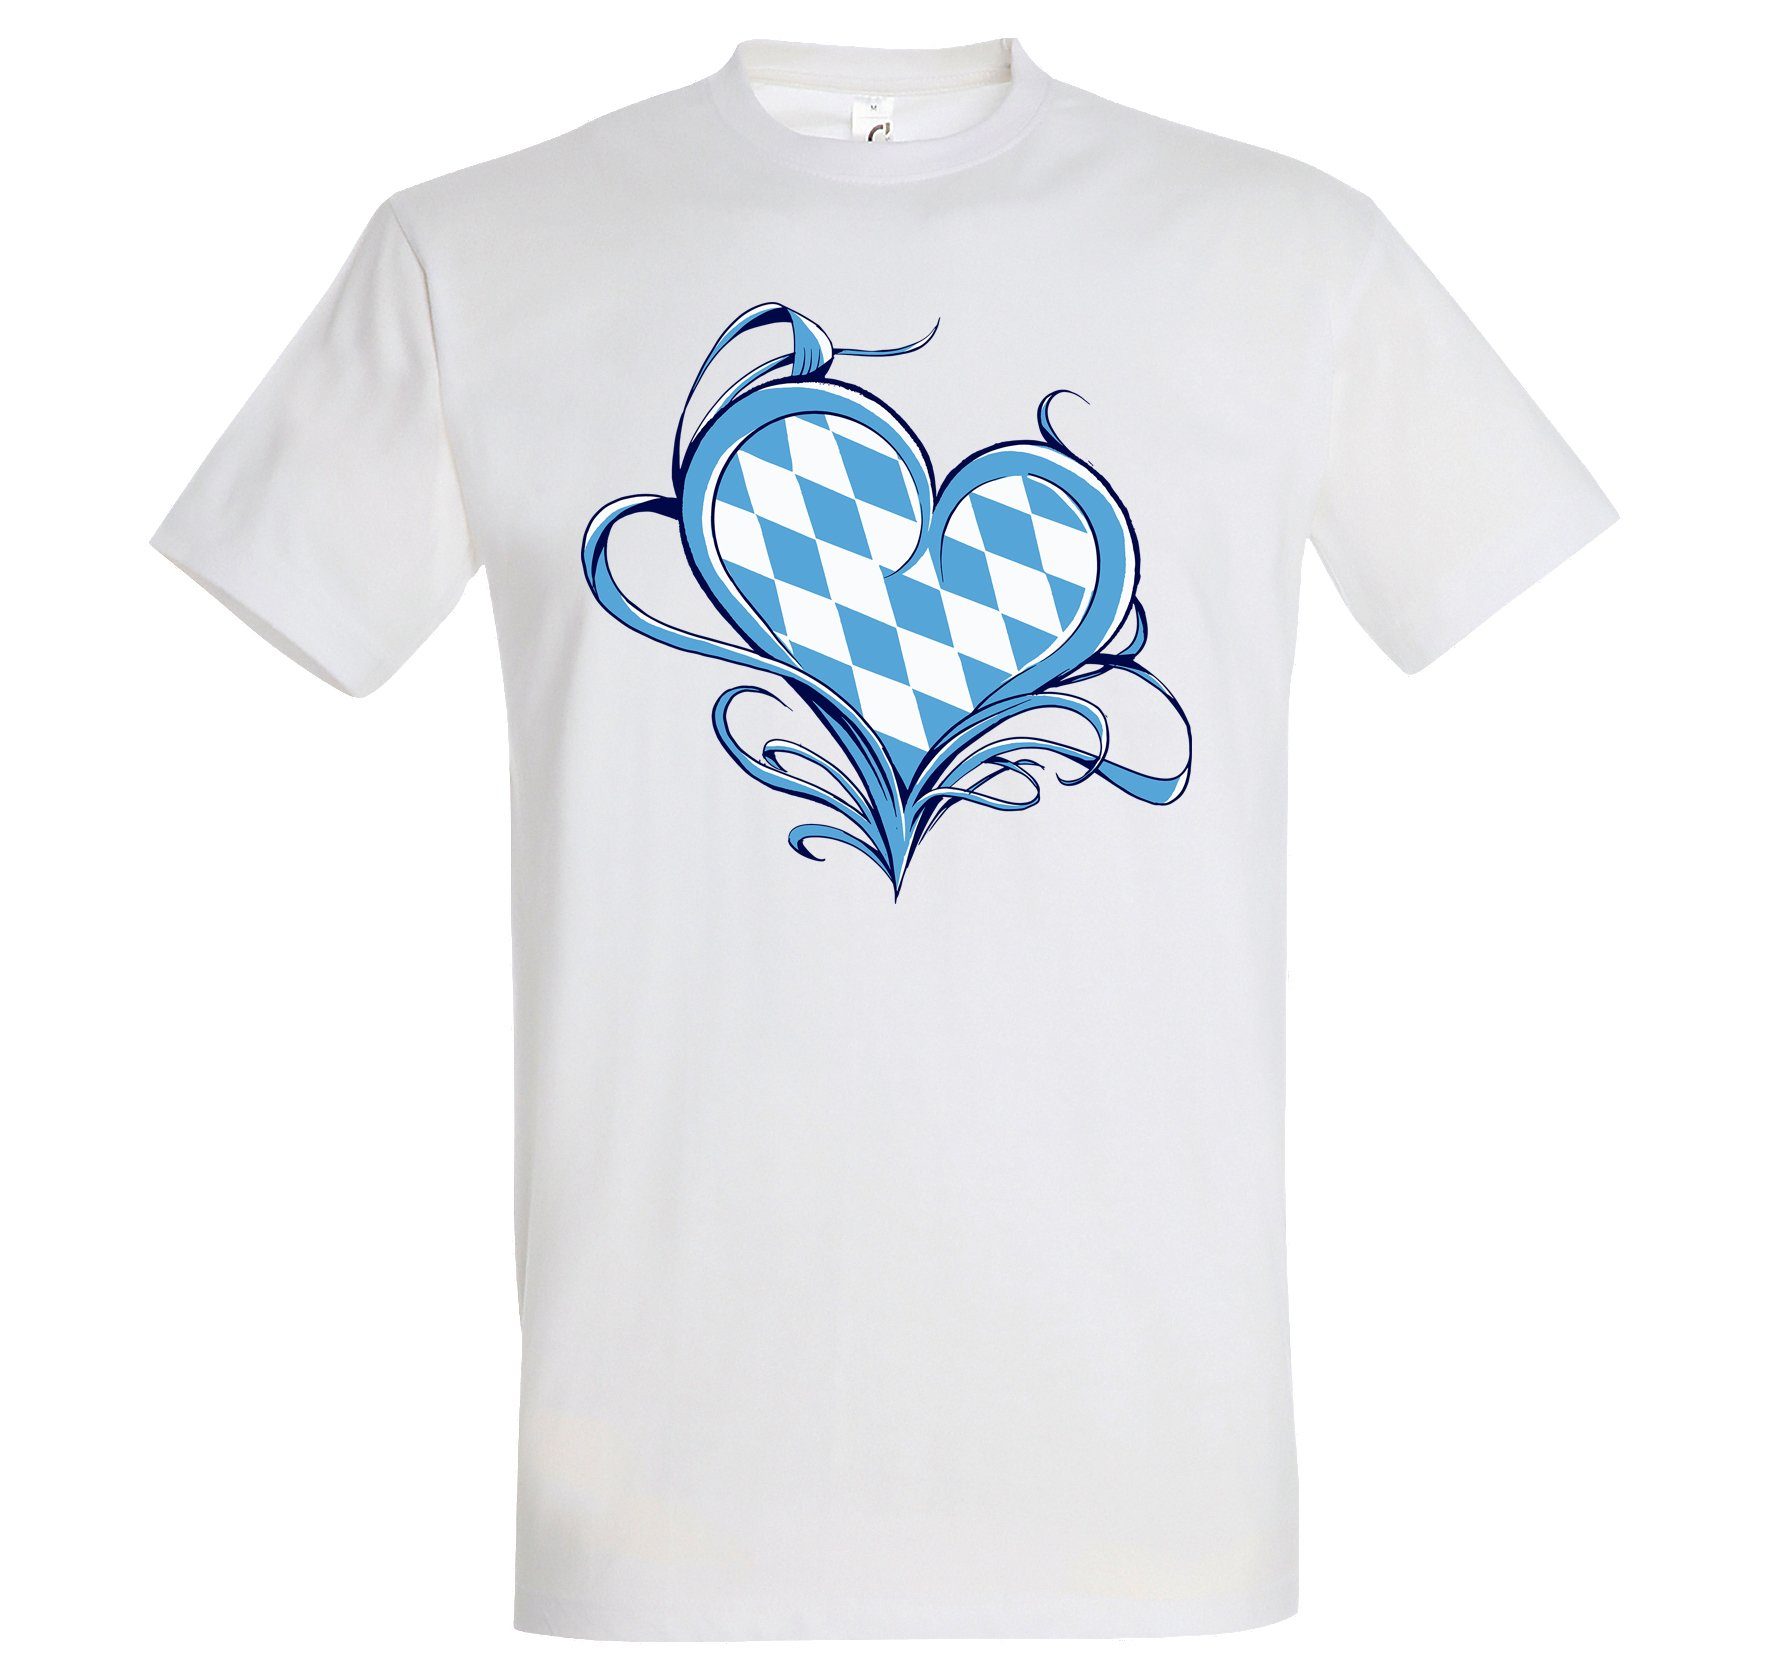 T-Shirt Youth Bayern Herren Love Designz Shirt Liebe Frontprint mit Weiß trendigem